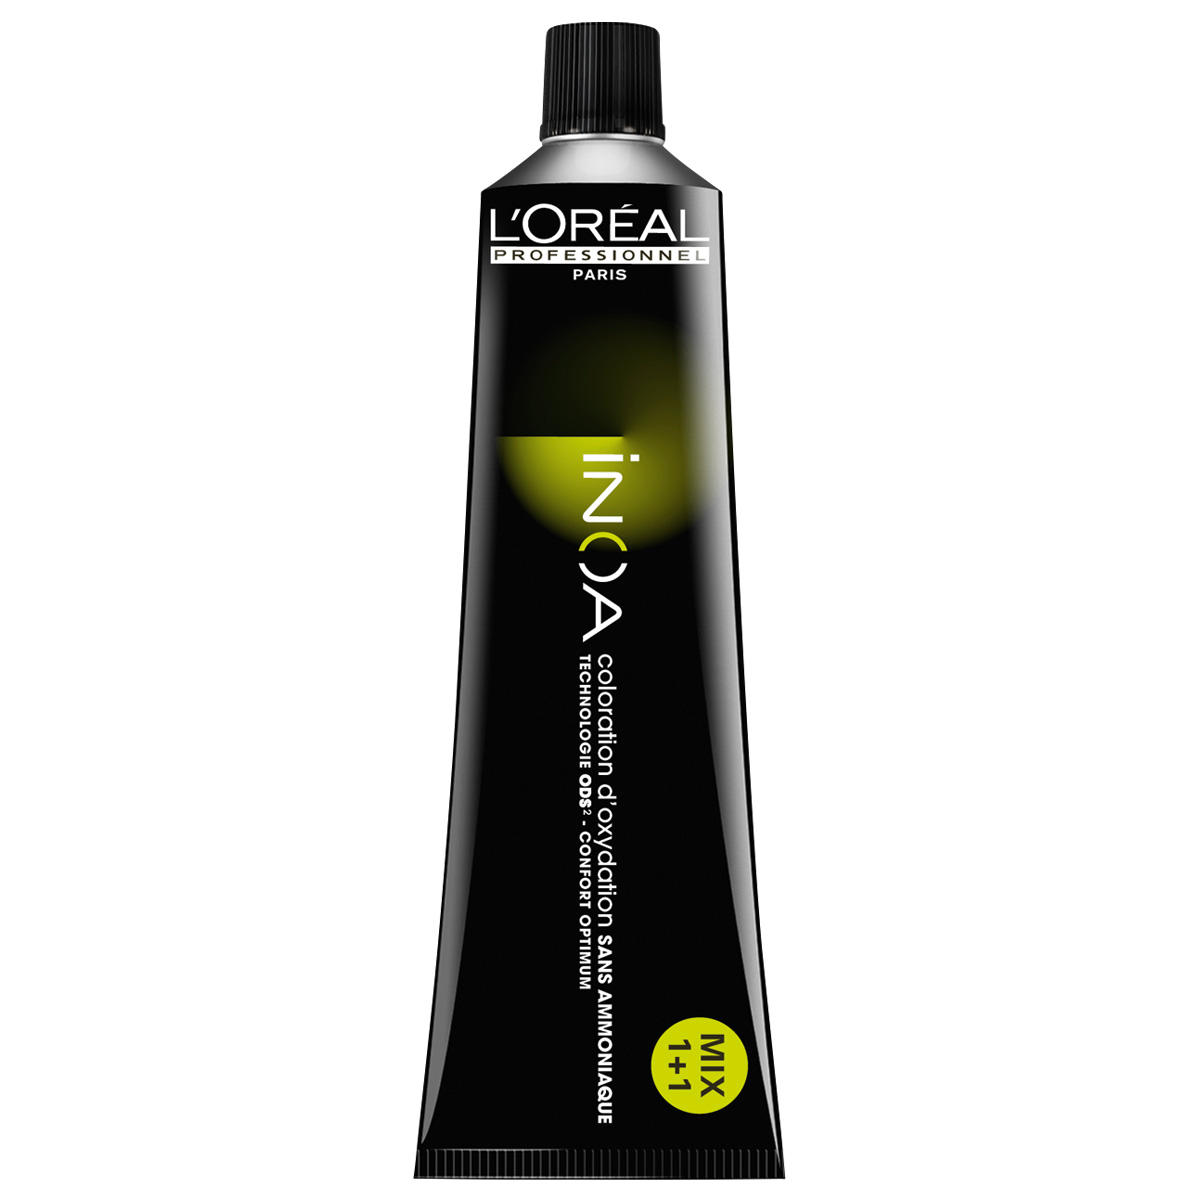 L'Oréal Professionnel Paris Coloration 6,1 Dunkelblond Asch, Tube 60 ml - 1